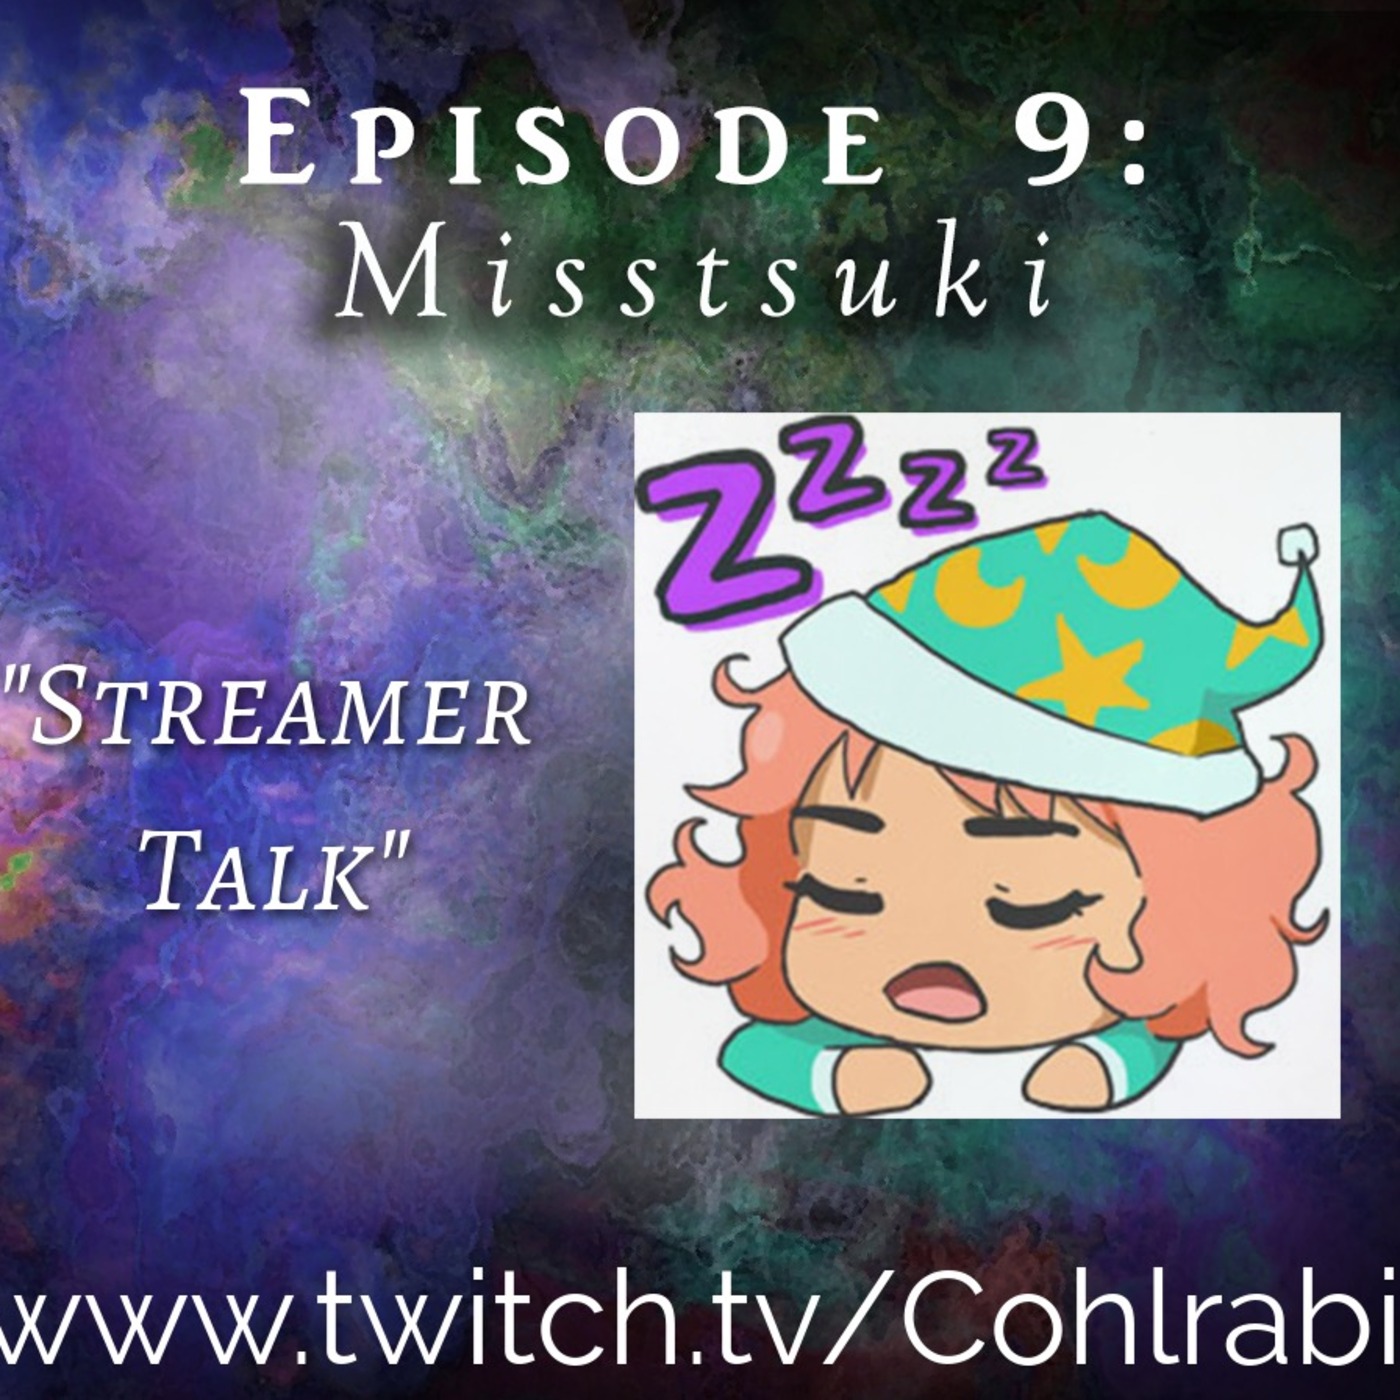 Episode 9 - Streamer Talk w/ Misstsuki